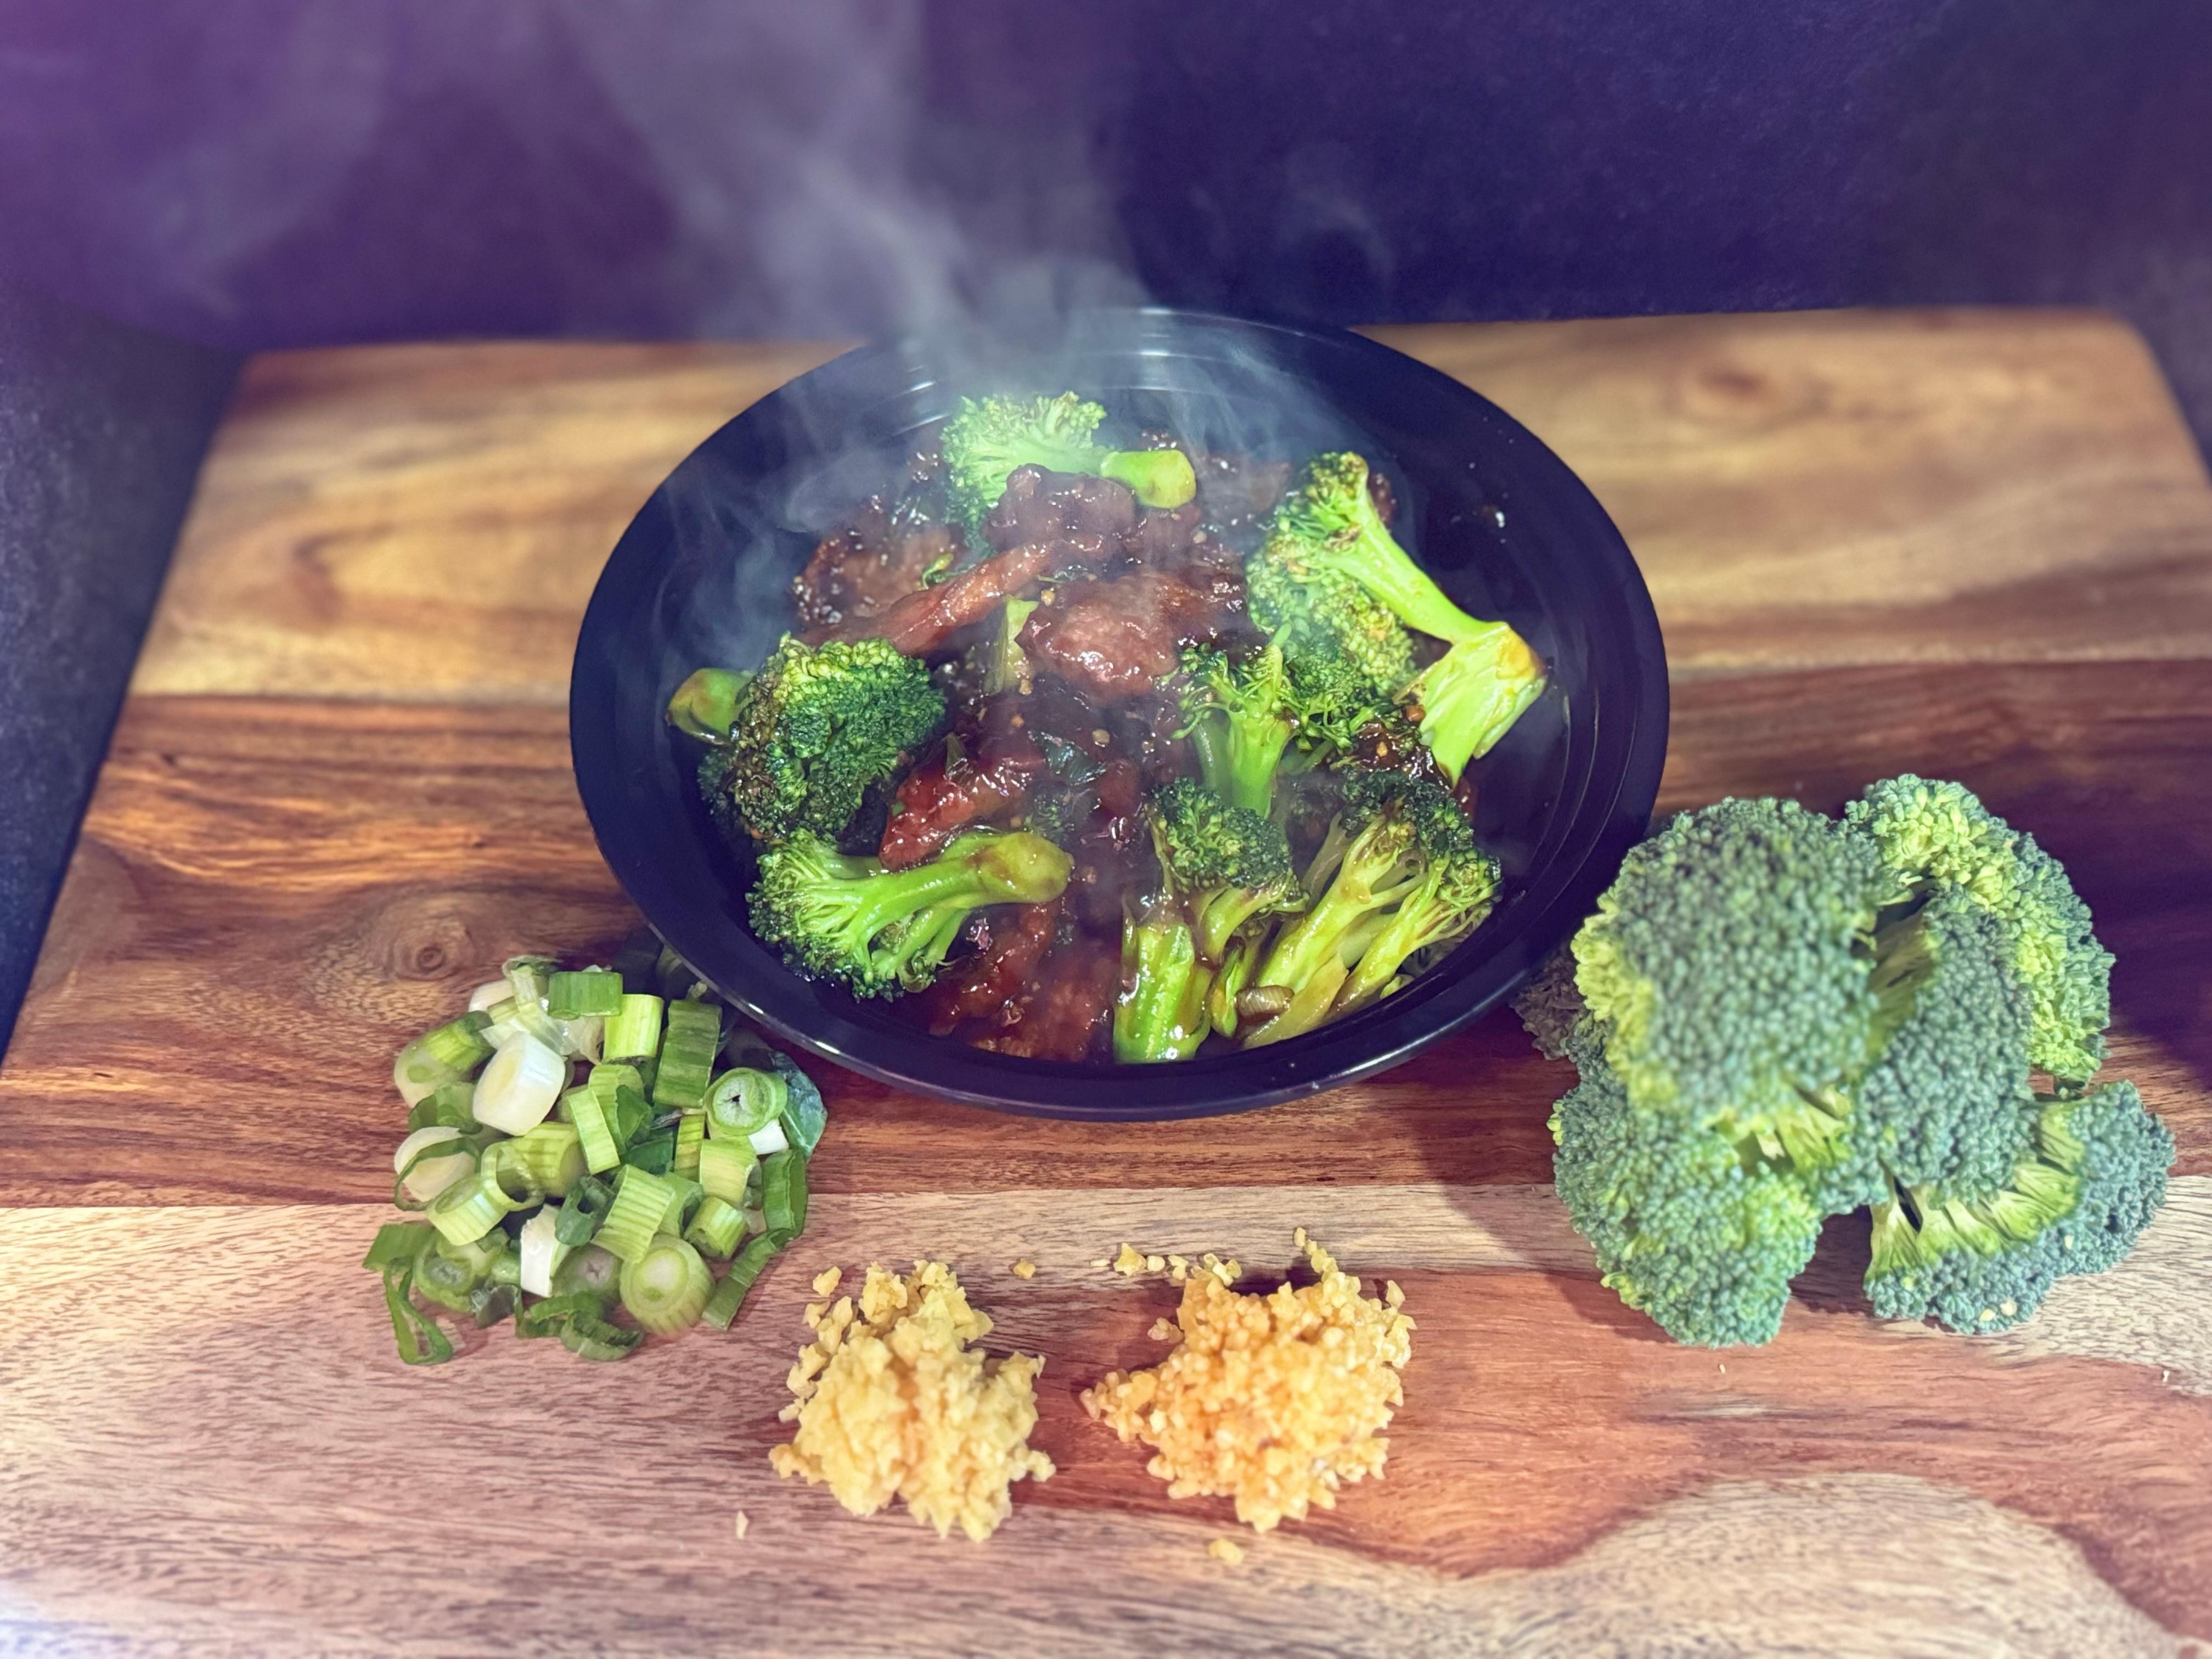 Beef & Broccoli